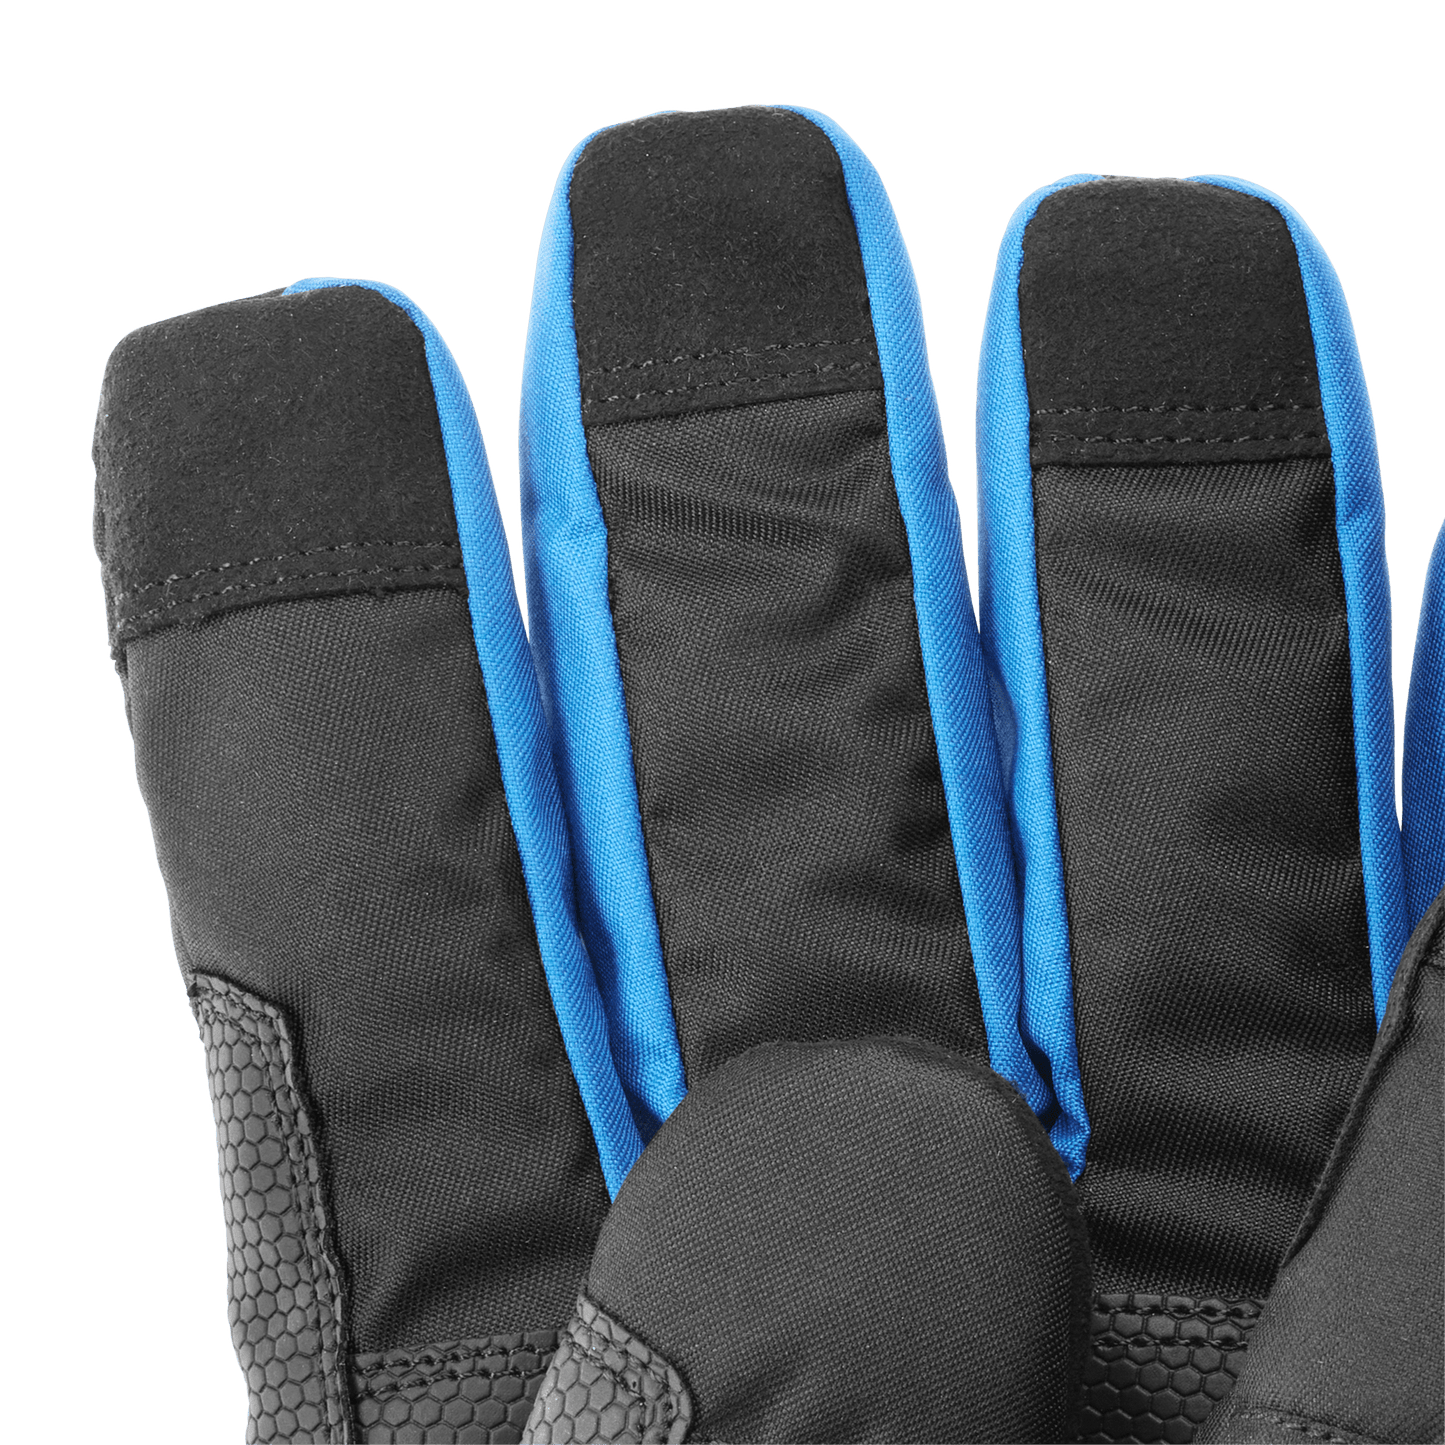 Winter Work Gloves - XL